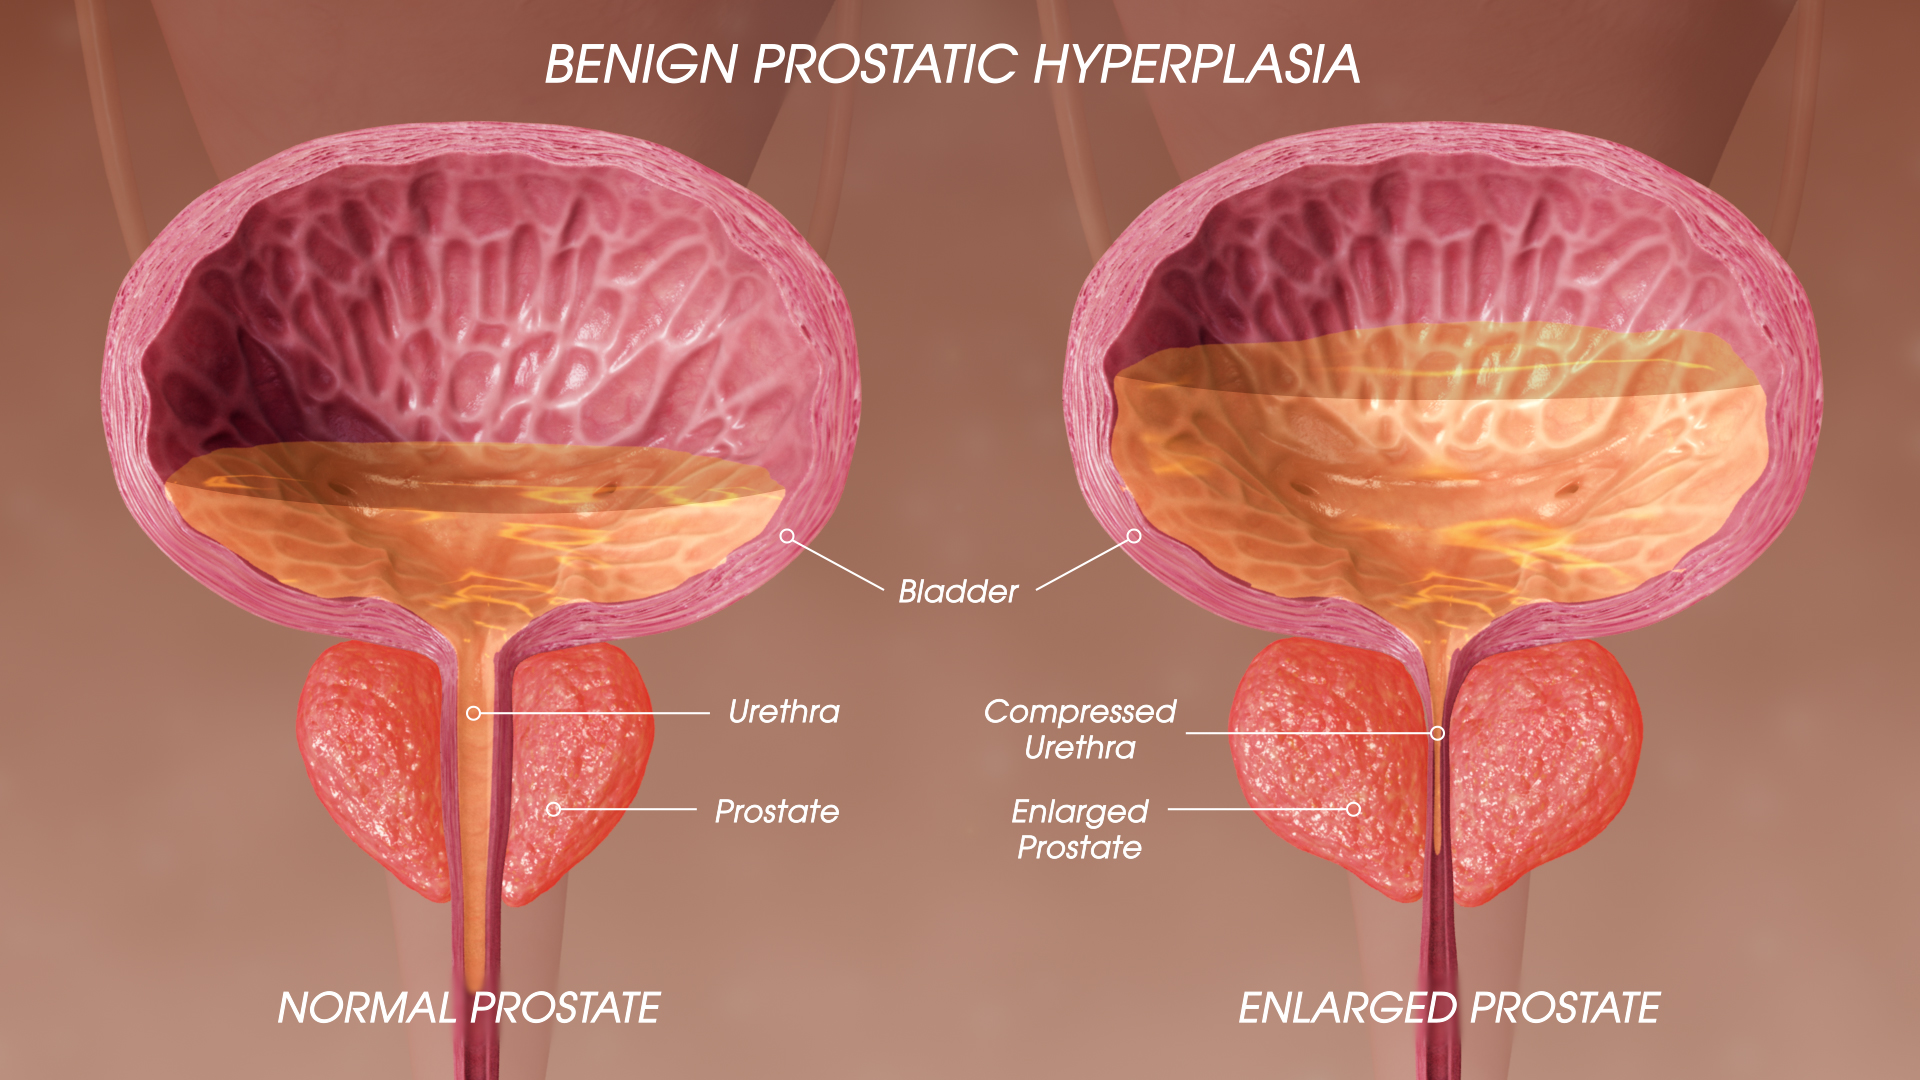 SAG Benign prostatic hyperplasia 190520 02